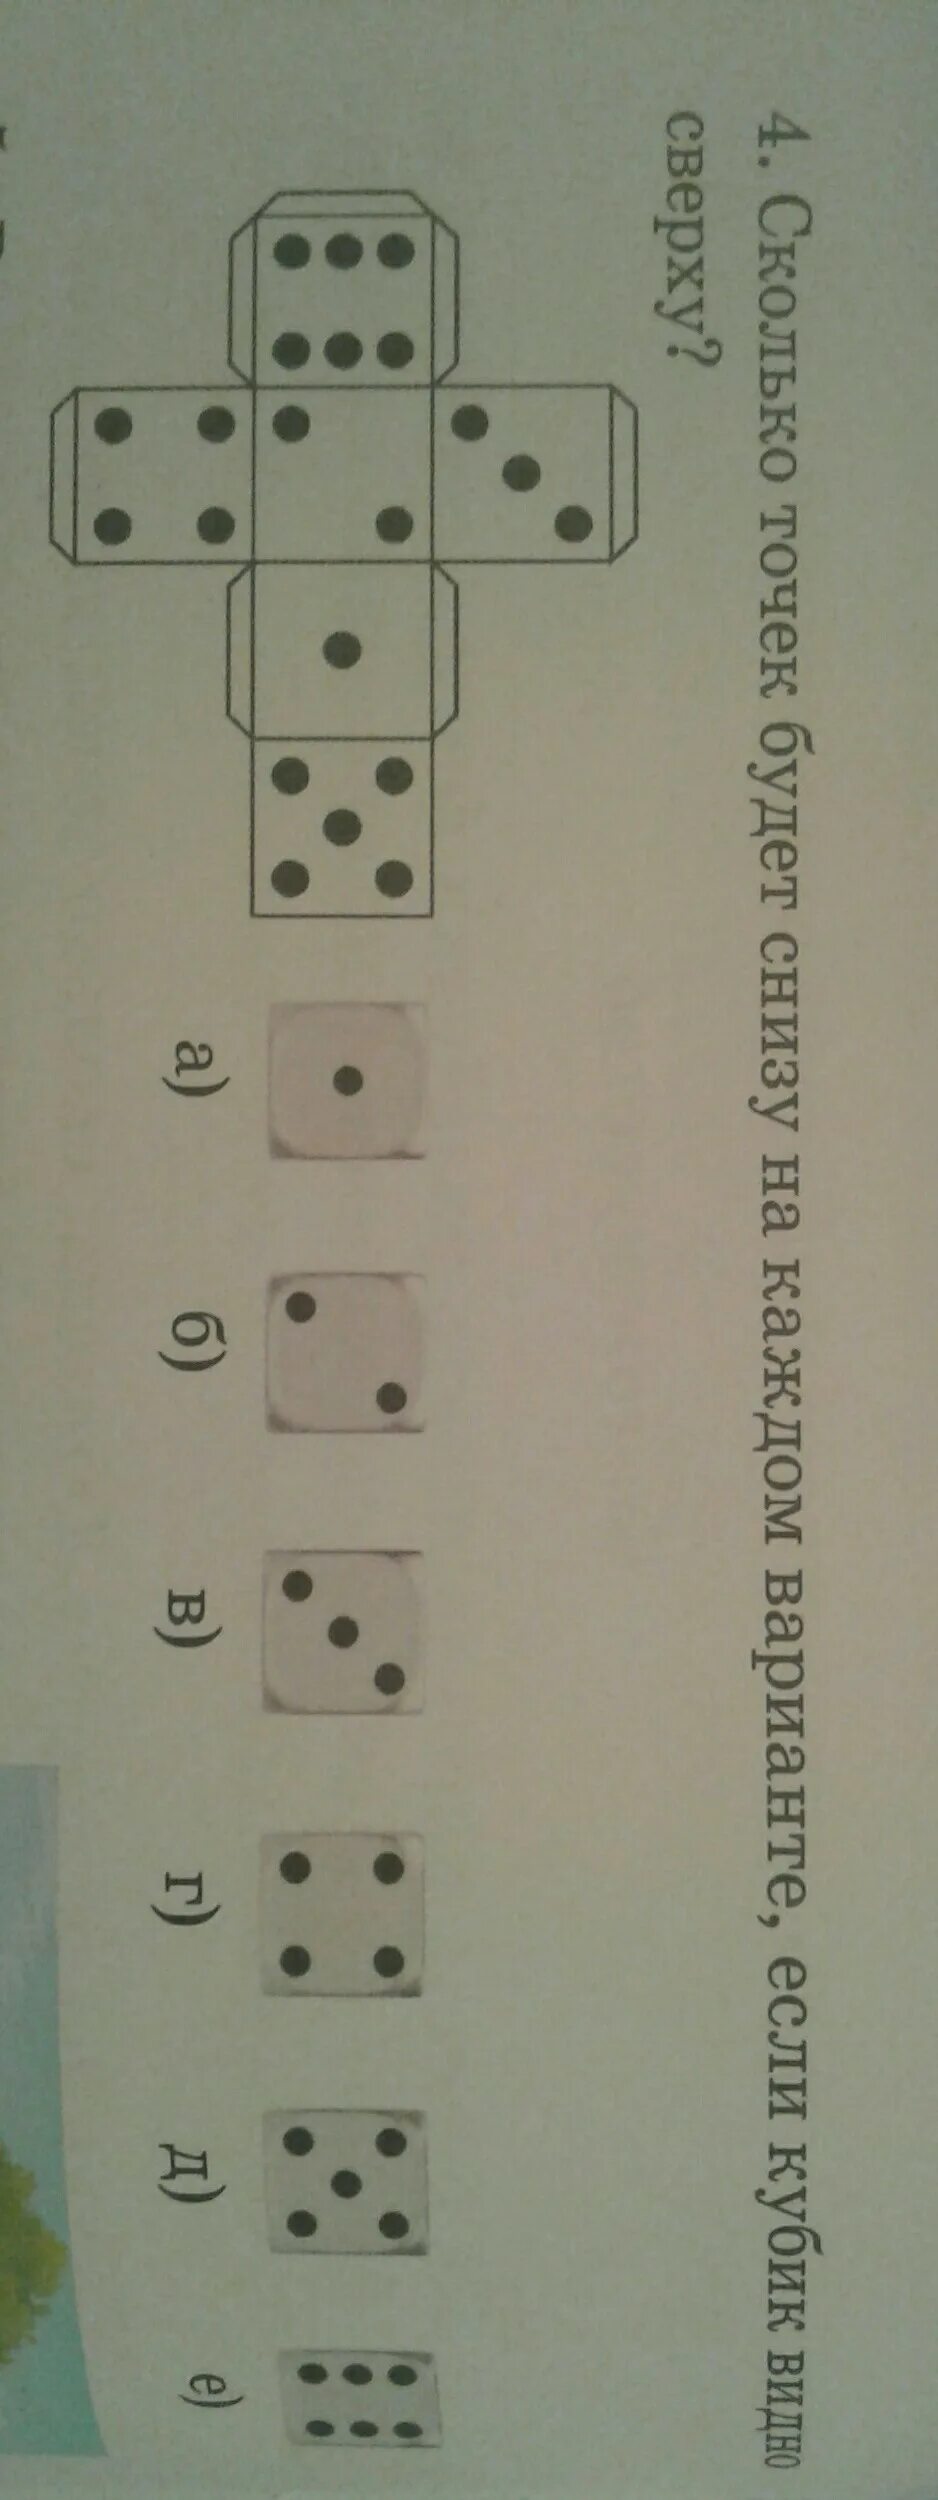 Сколько точек на кубике. Сколько точек на игральной кости. Кубик с точками сверху 5 а снизу. Сколько точек будет внизу на каждом варианте если кубик видно сверху.